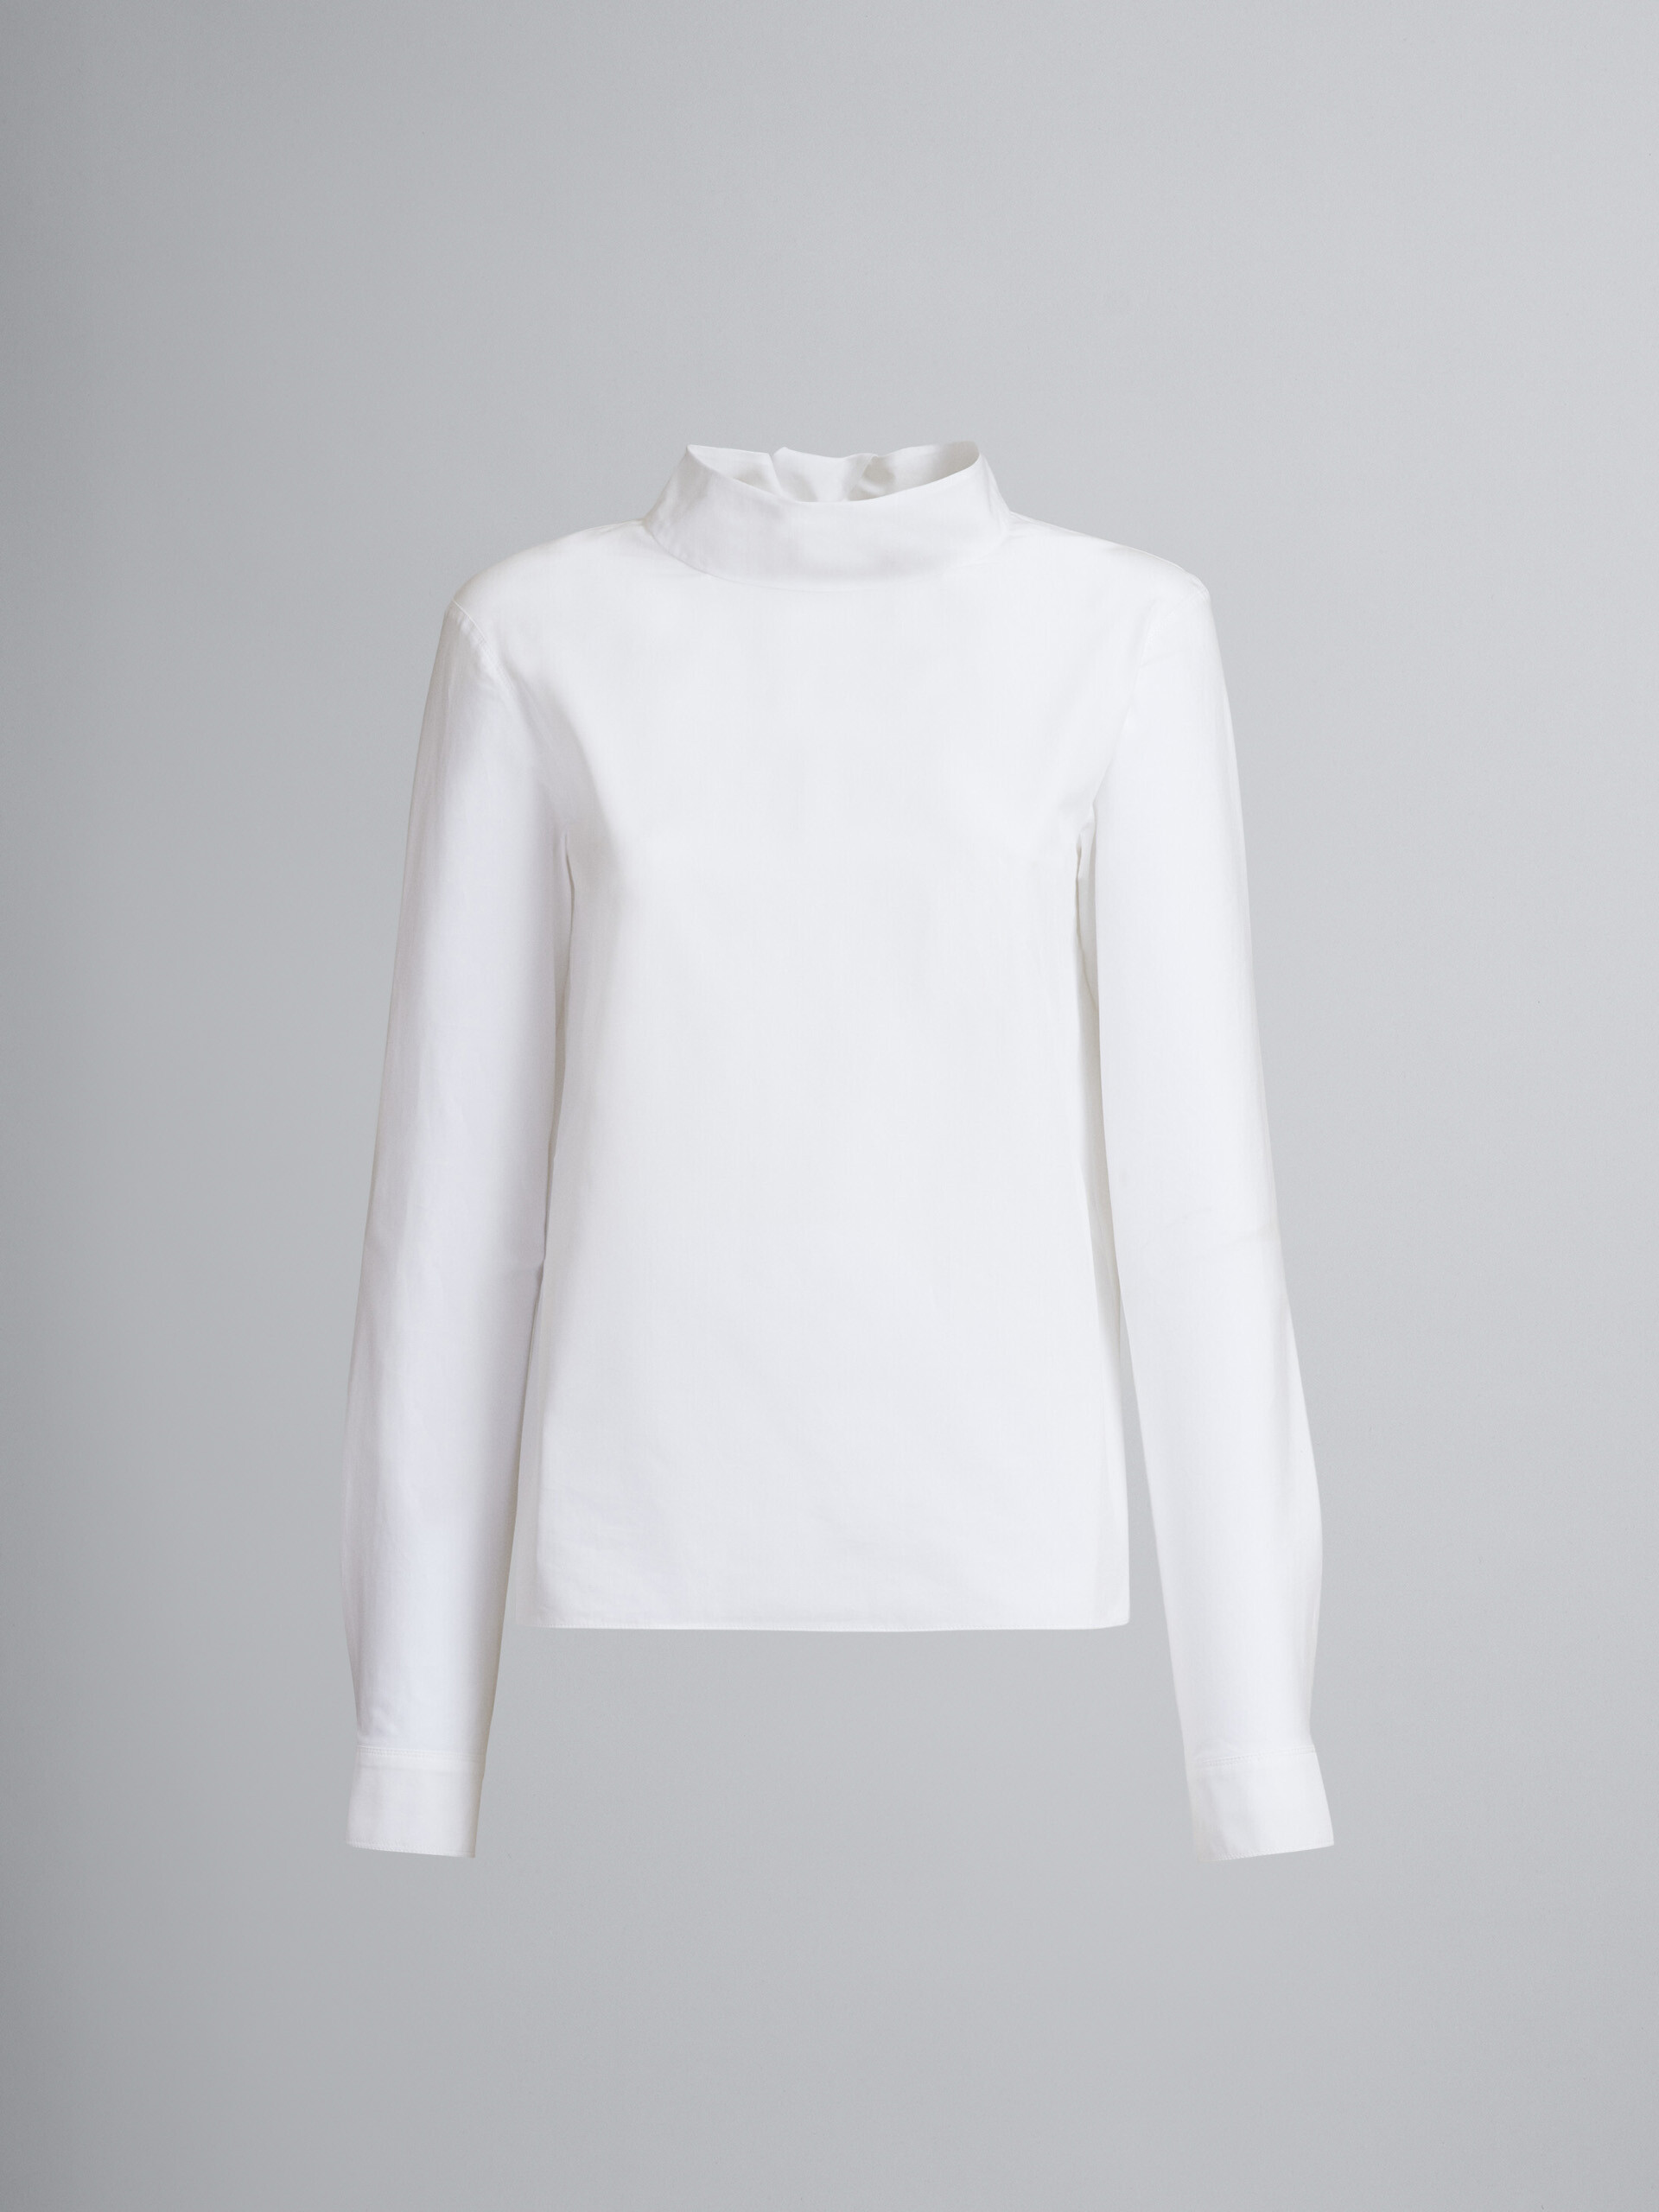 Weiße Bluse aus Baumwollpopeline mit Lavallière-Kragen, der auf der Rückseite geknotet wird - Hemden - Image 1